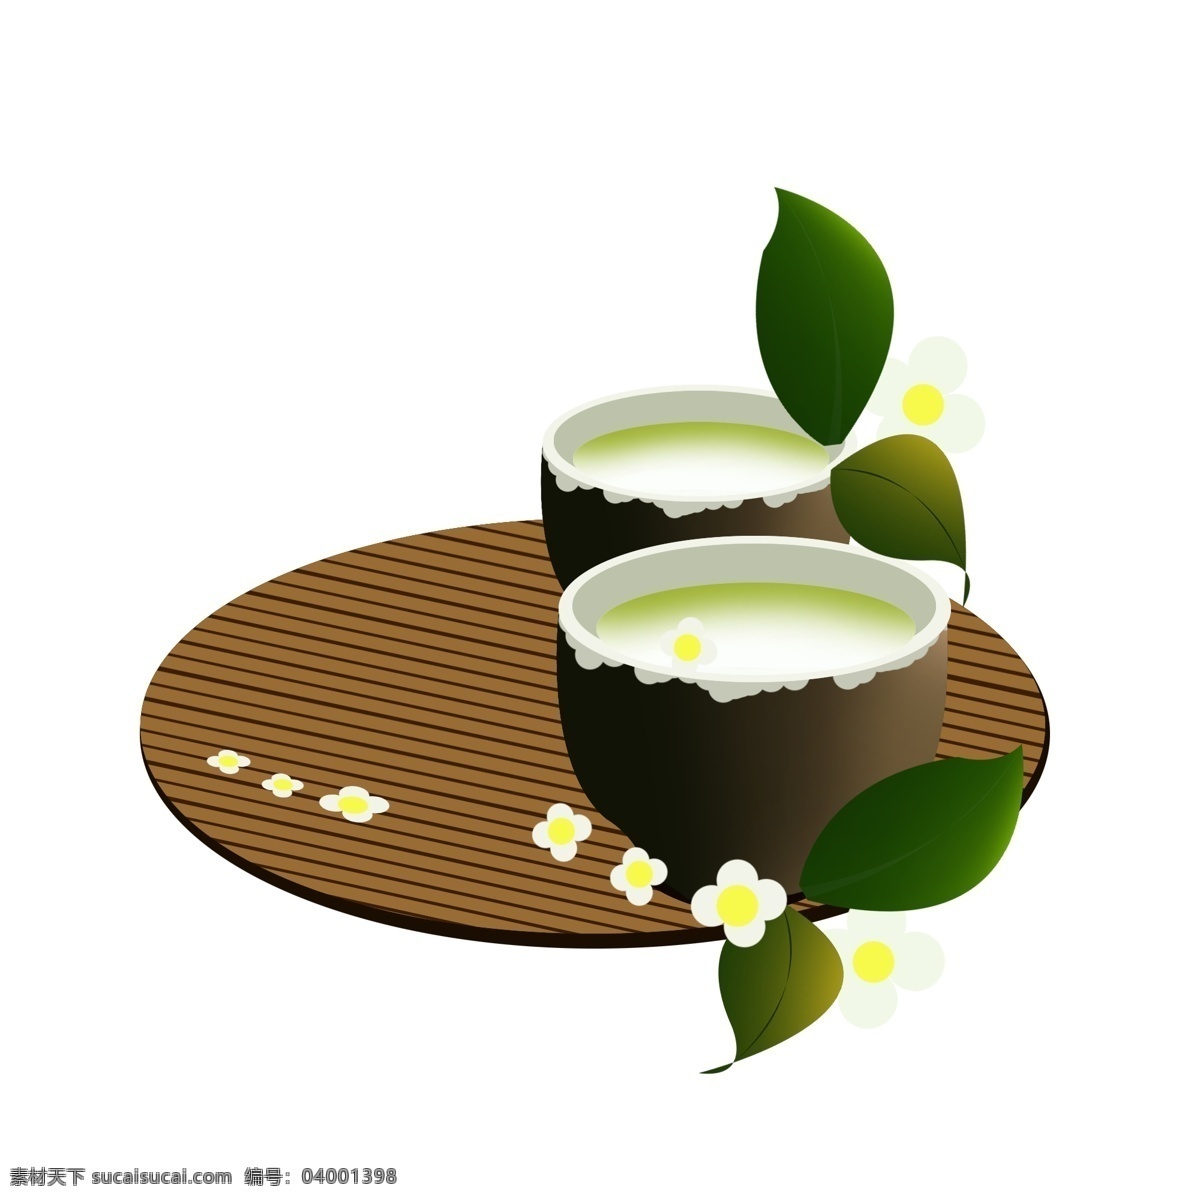 茶具 一对 茶碗 插画 茶壶 茶炉 陶器 茶道 茶文化 工艺品 绿色叶子 花朵装饰 一对茶碗插画